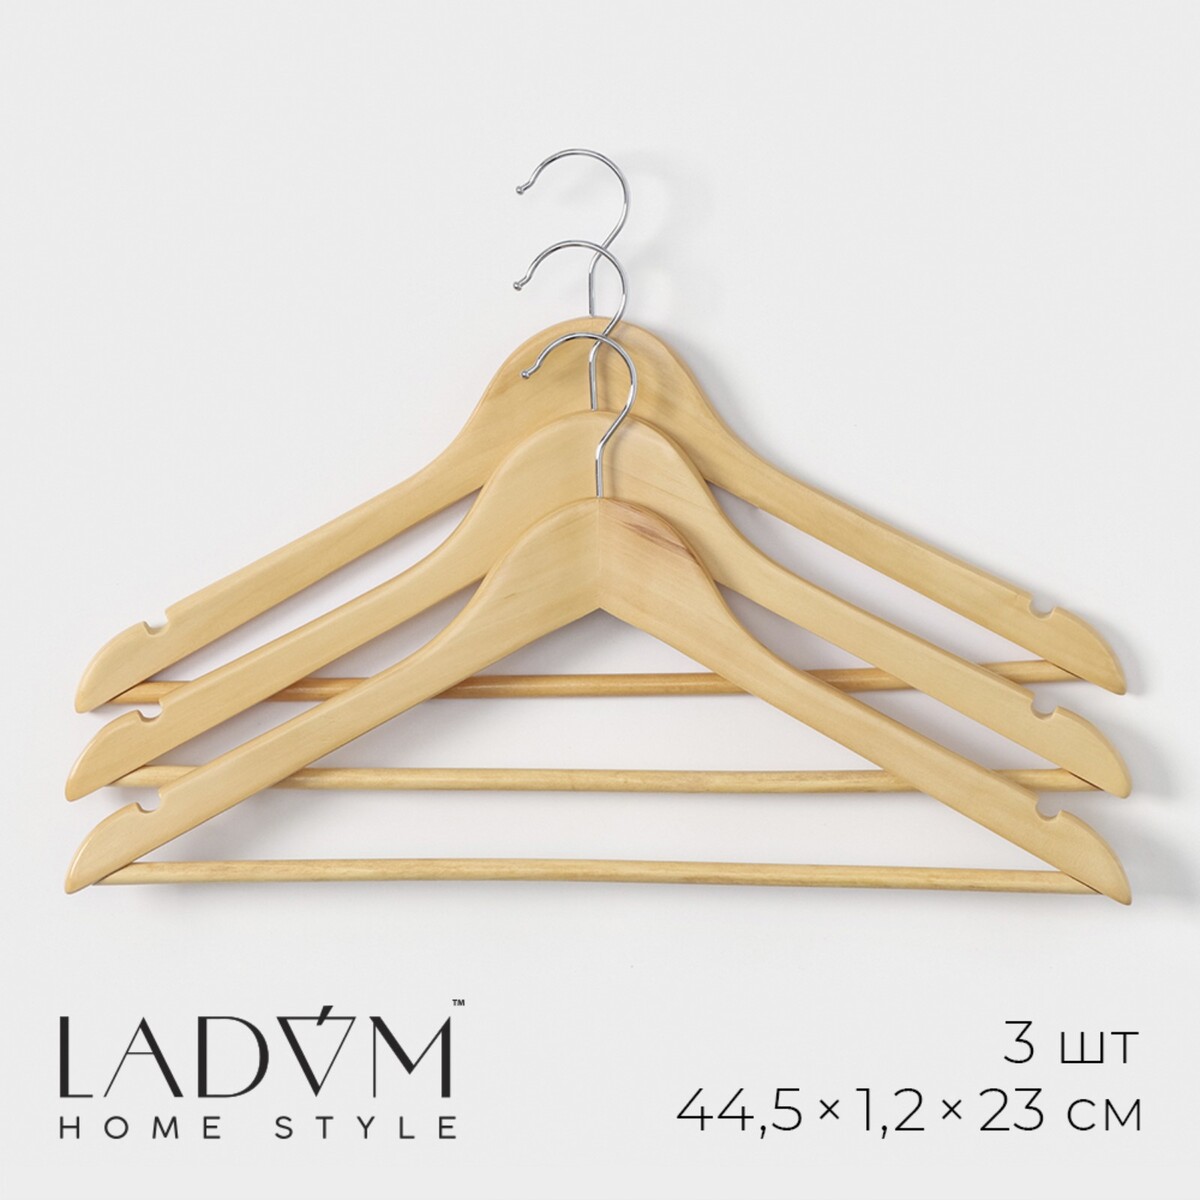 Плечики - вешалки деревянные для одежды с перекладиной ladо́m bois, 44,5×1,2×23 см, 3 шт, сорт а, цвет светлое дерево плечики вешалки для одежды ladо́m